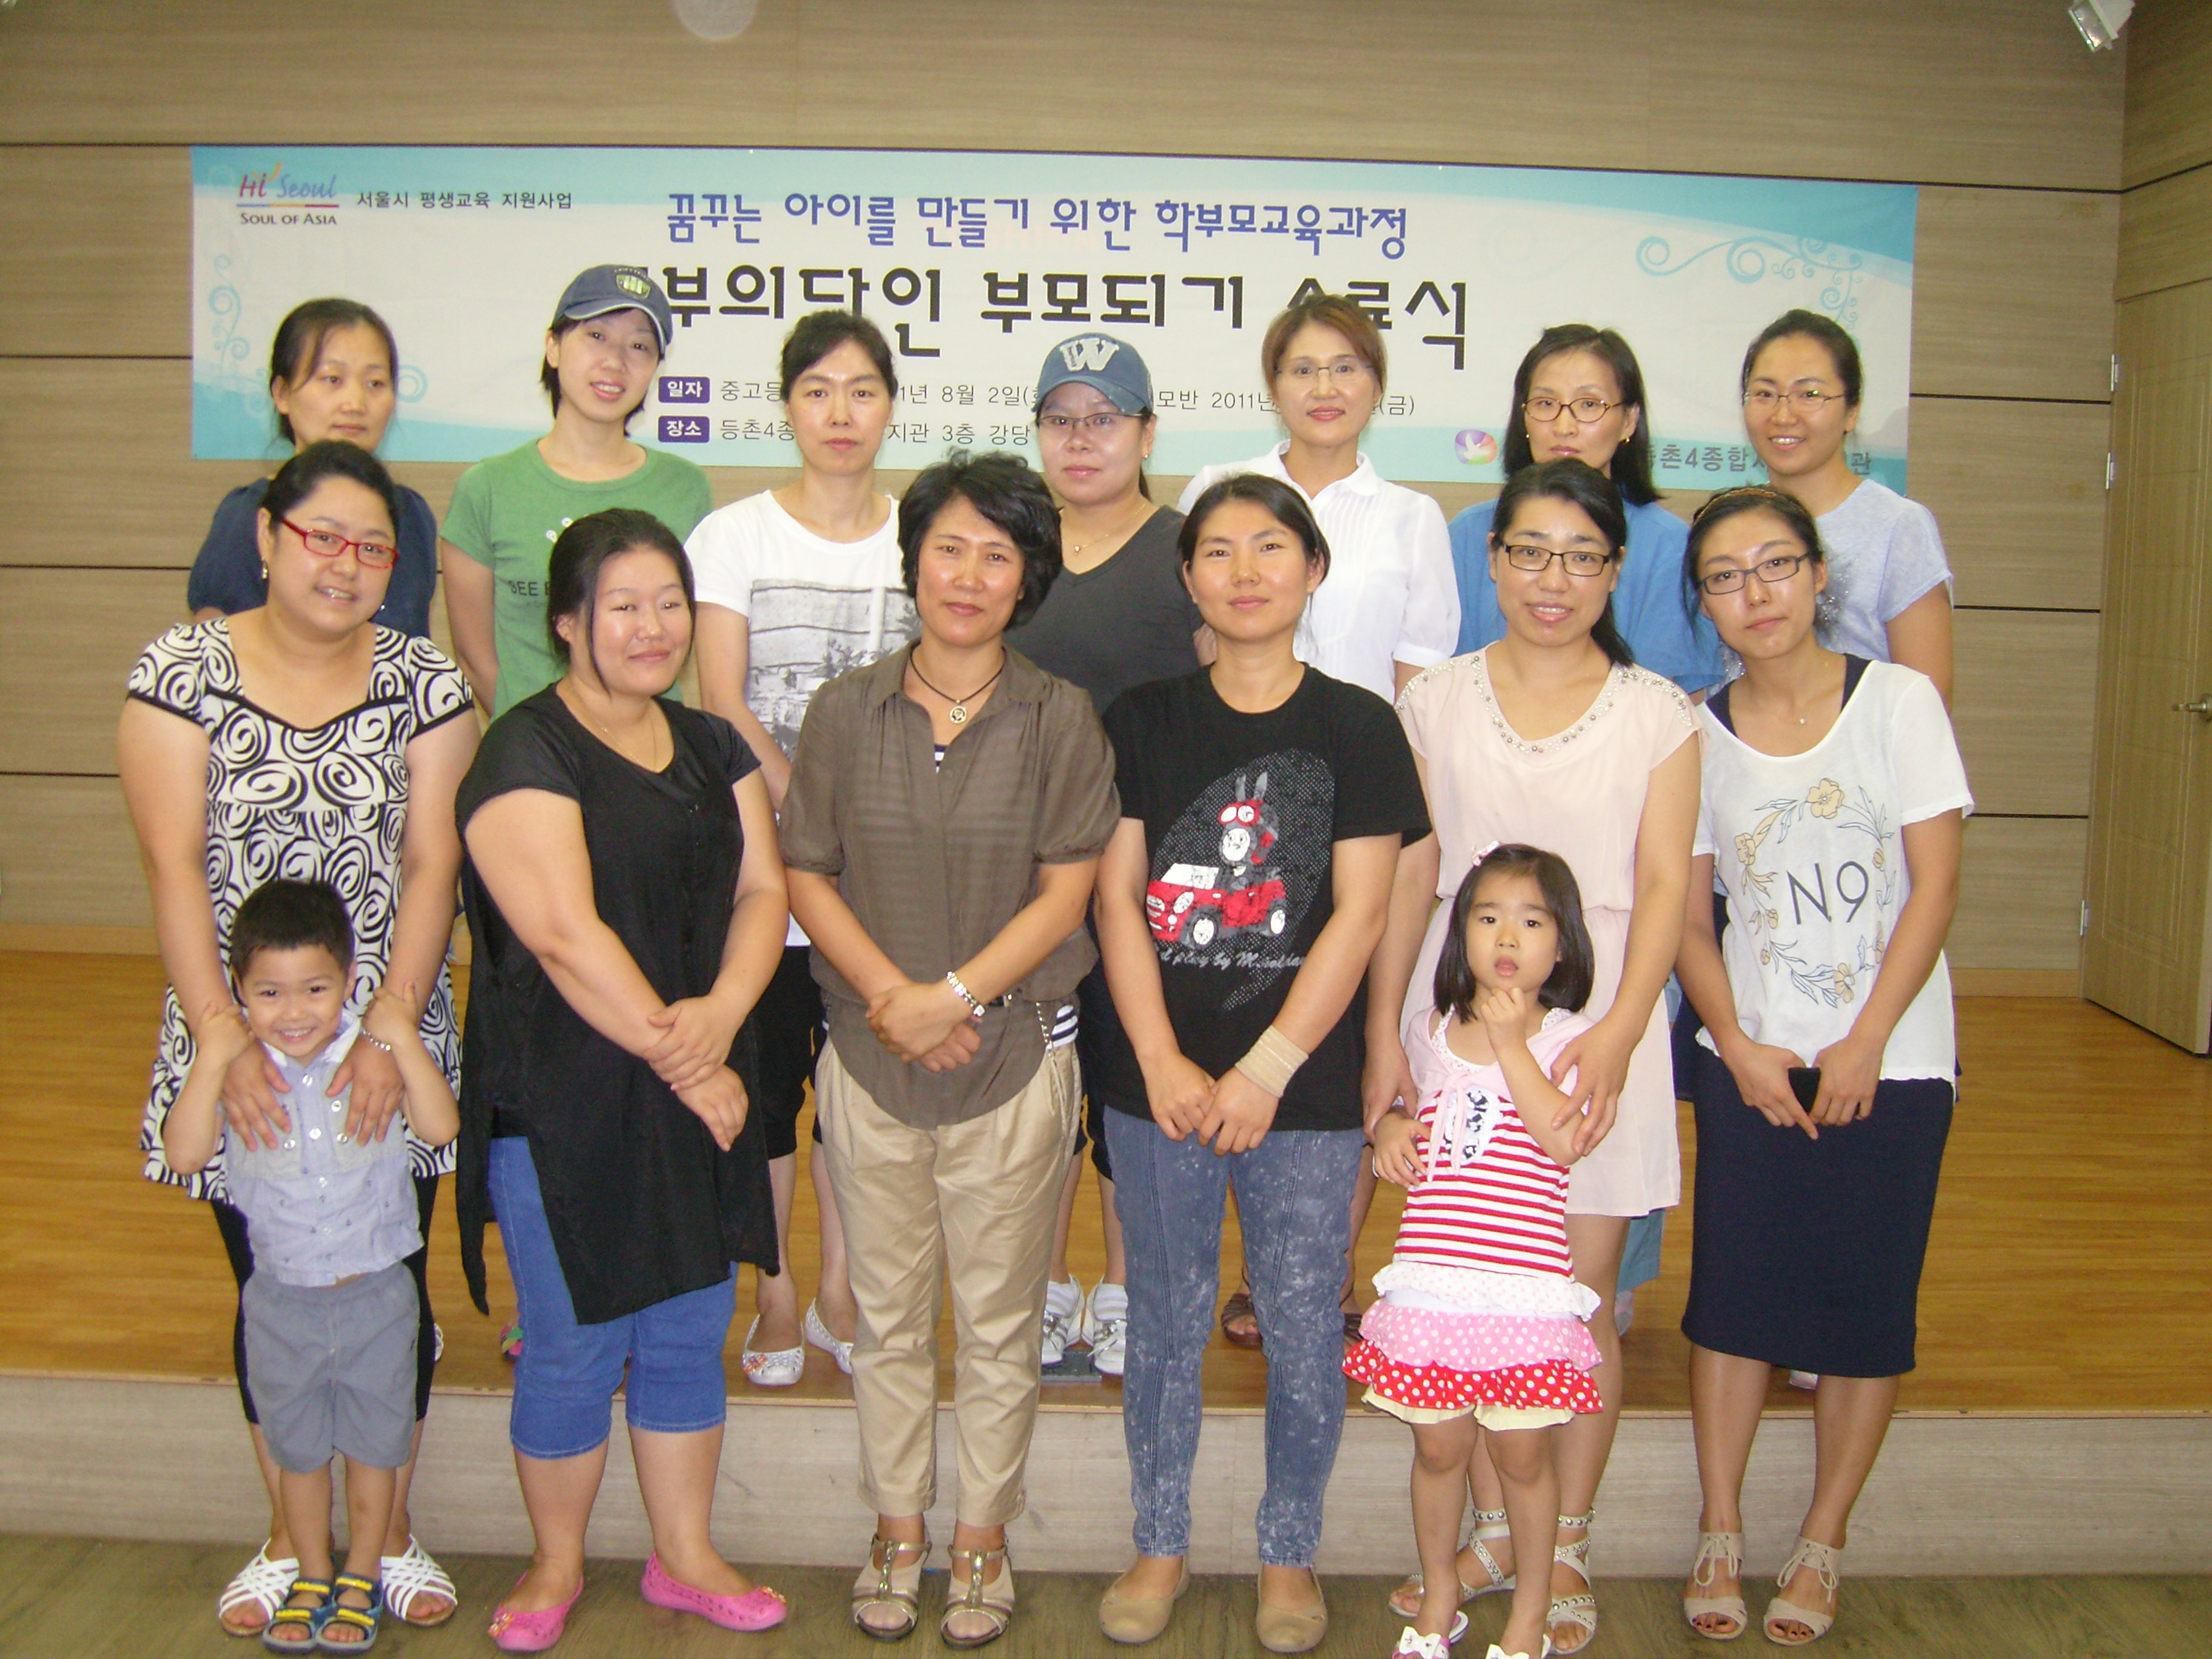 공부의달인 부모되기 참여자 어머님들의 단체사진